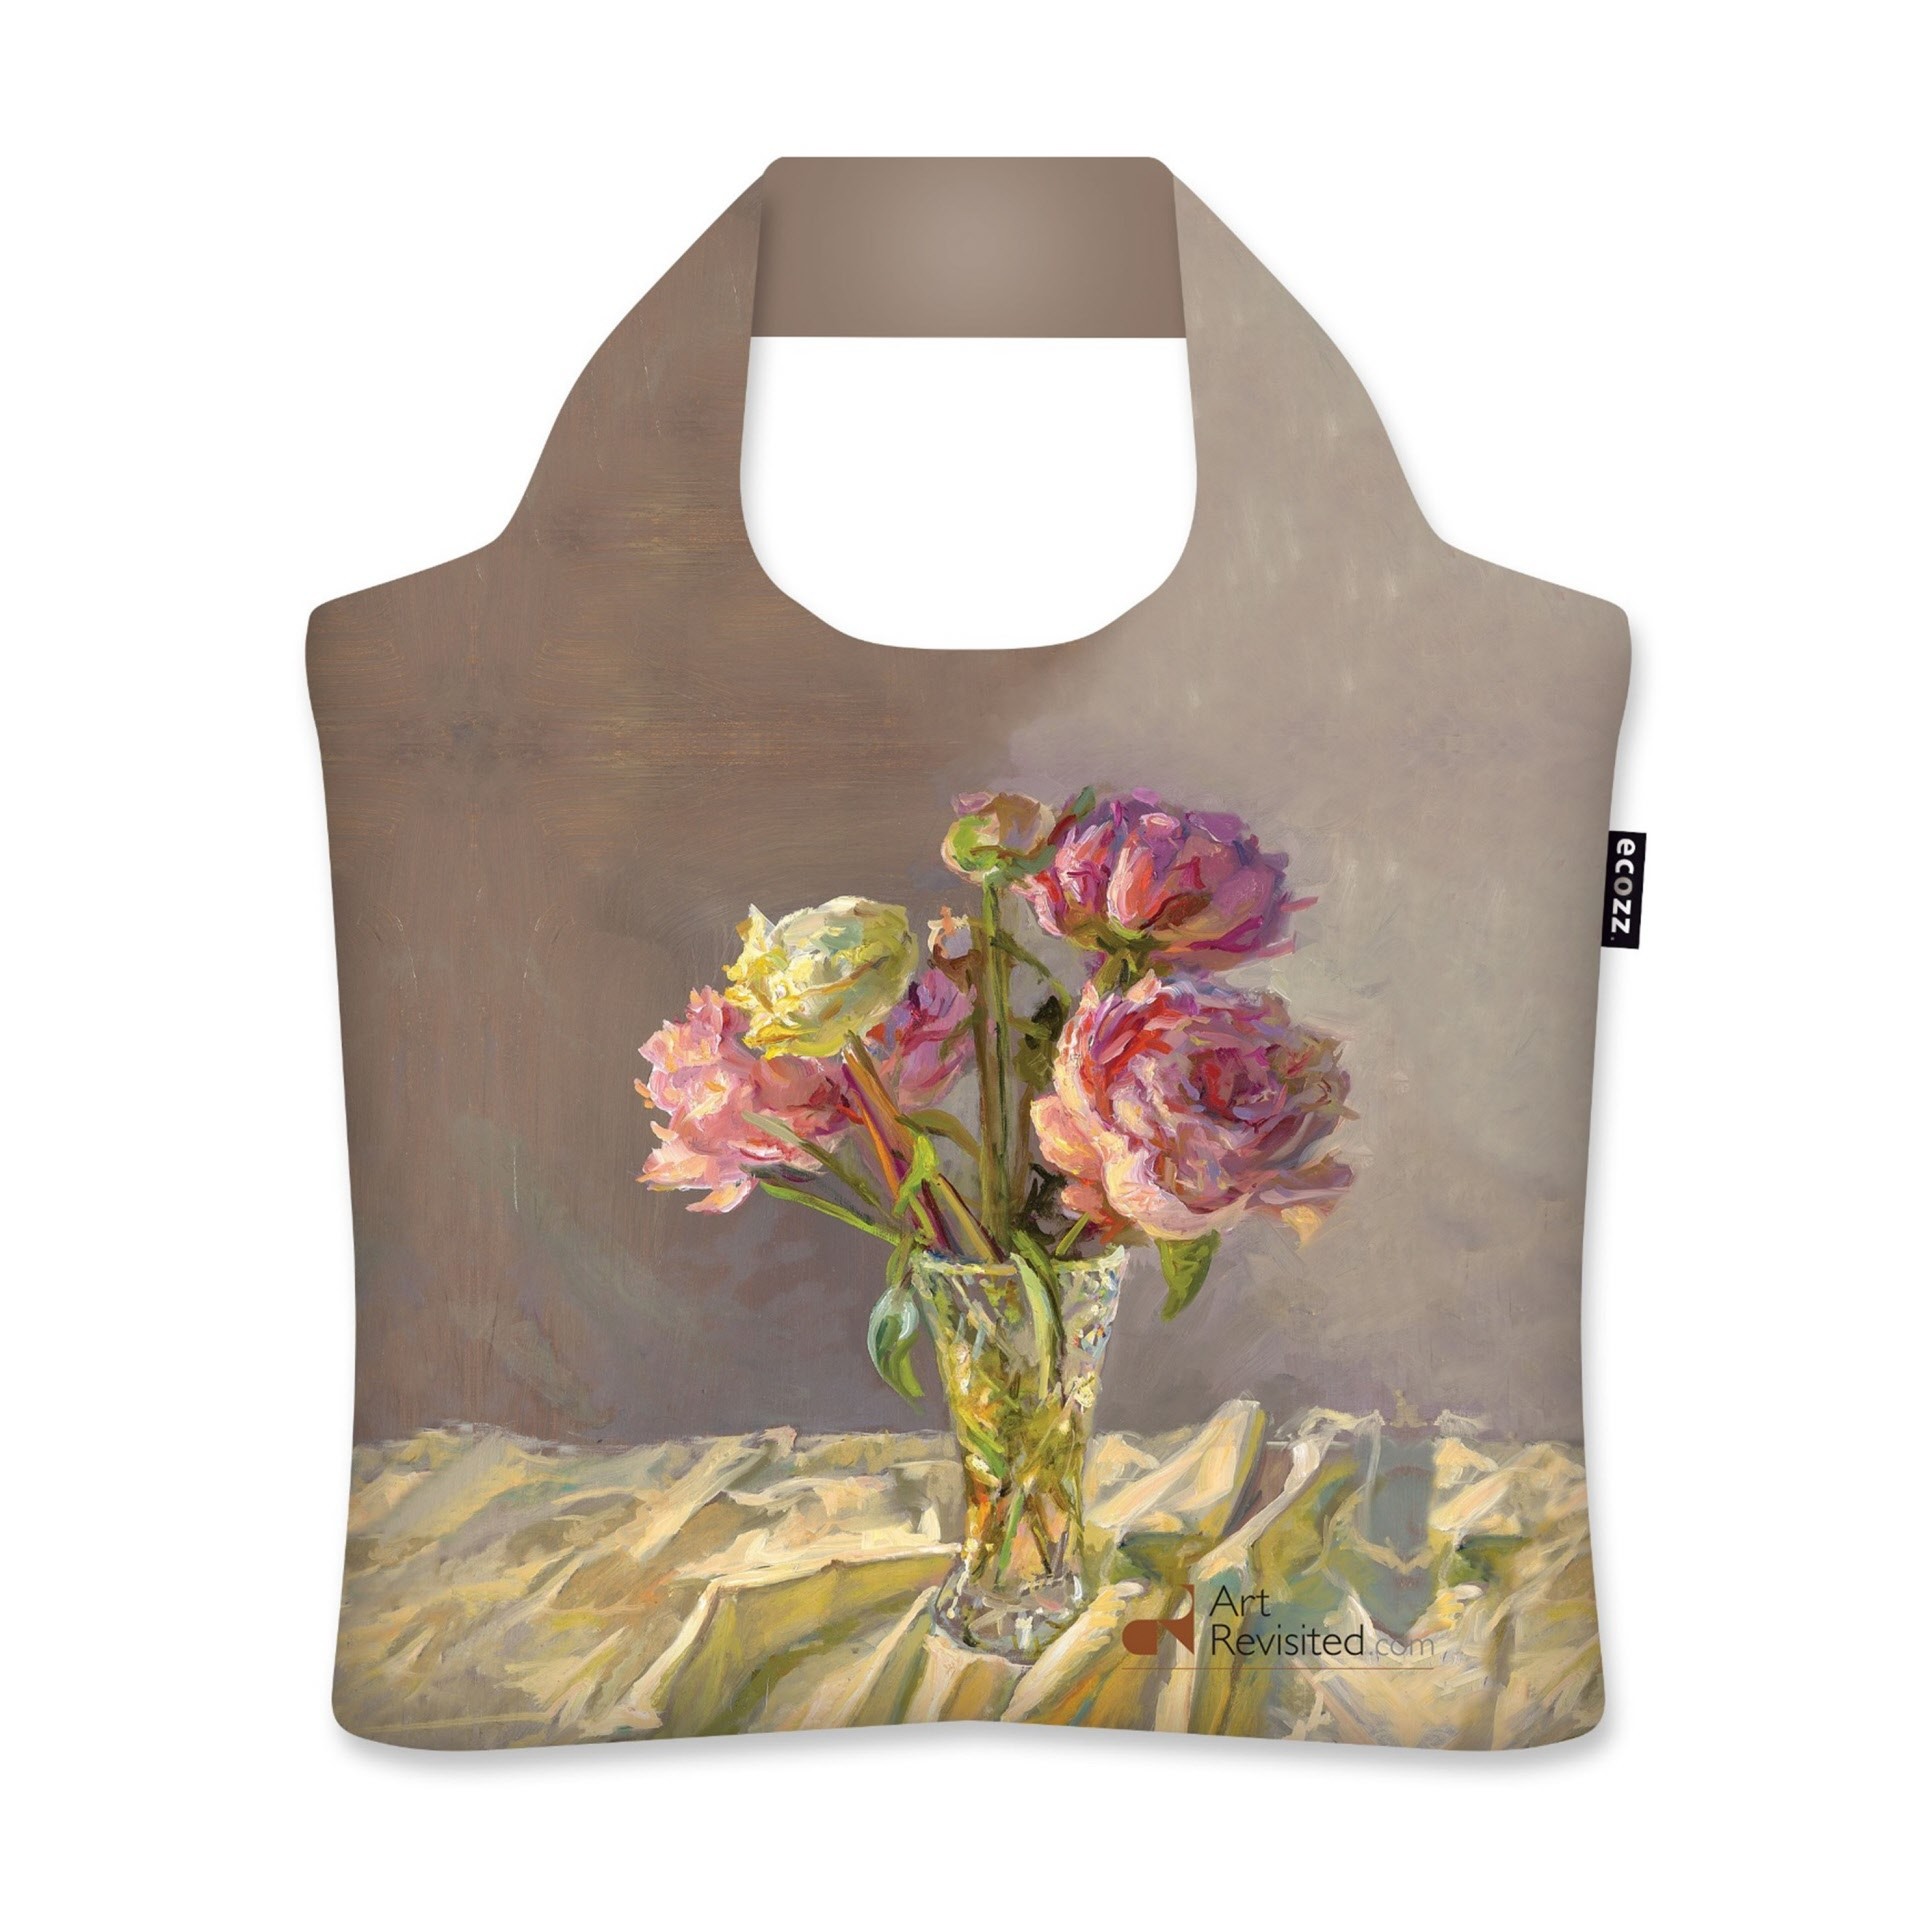 Ostukott Shopping Bag The last blooming peonies disainer Keimpe van der Kool